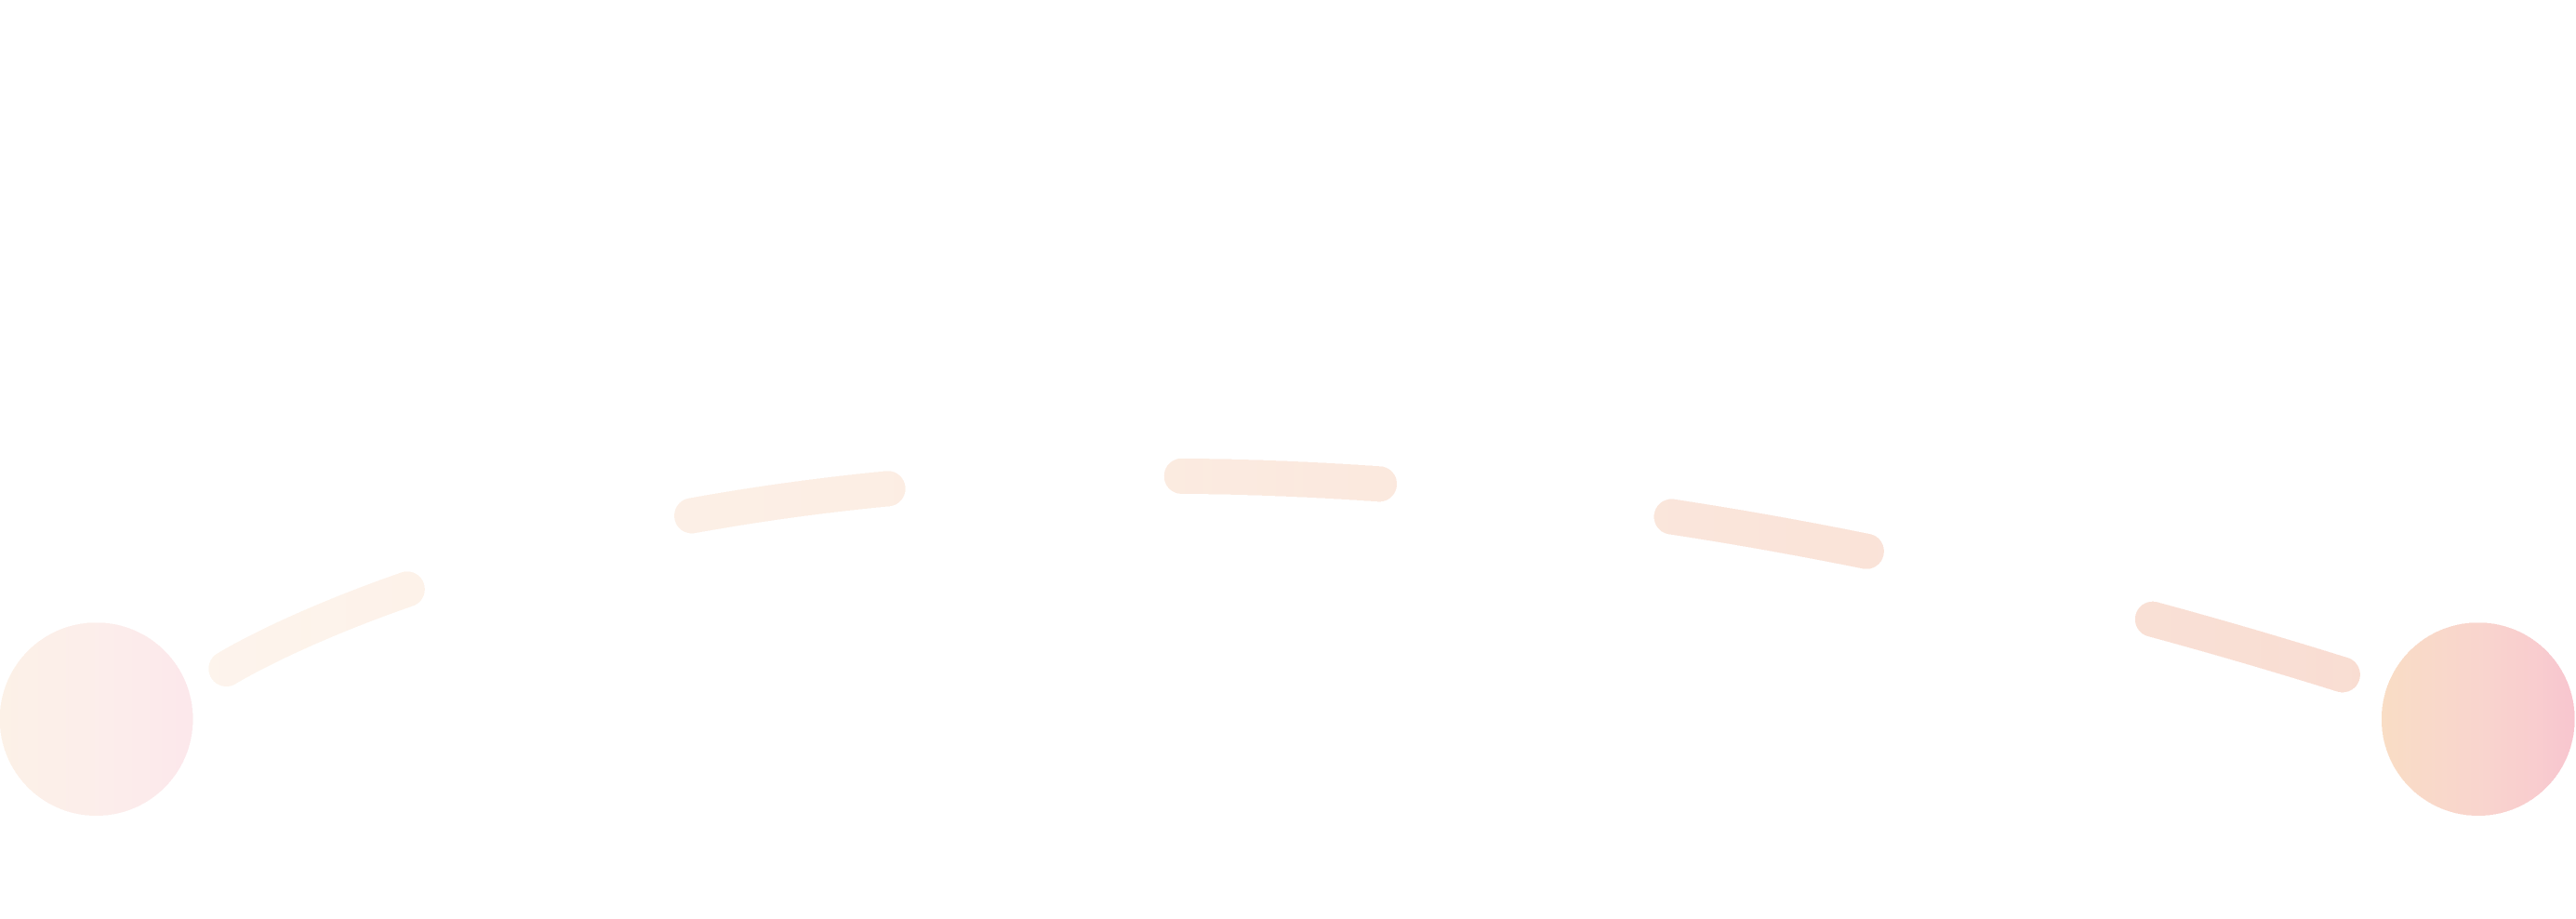 Orangefarbene Linie, die den ersten Schritt des Bewerbungsprozesses darstellt.